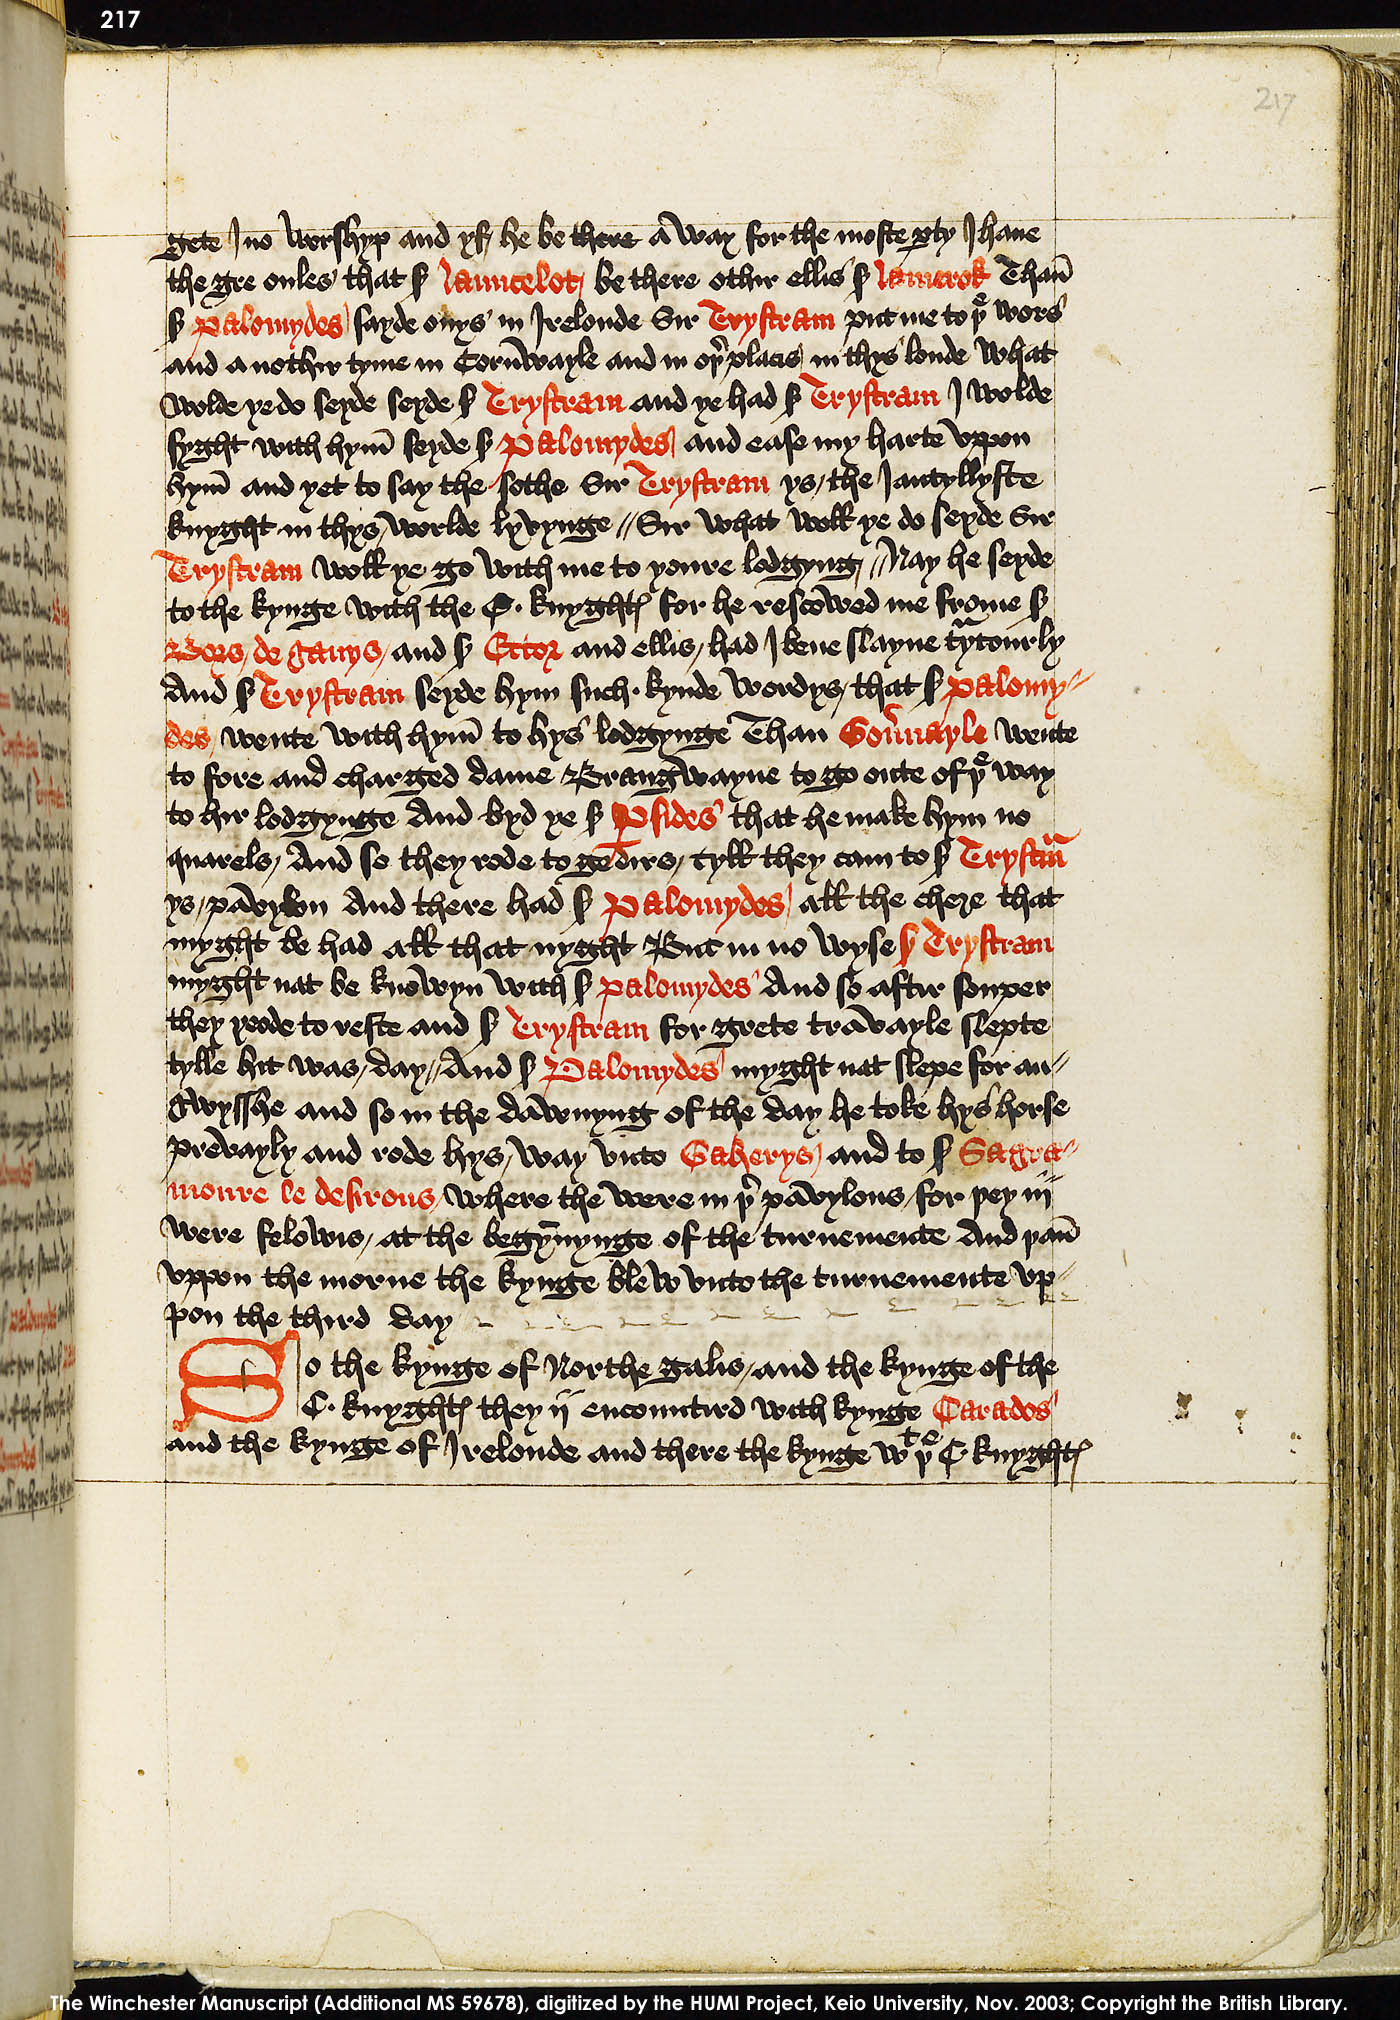 Folio 217r